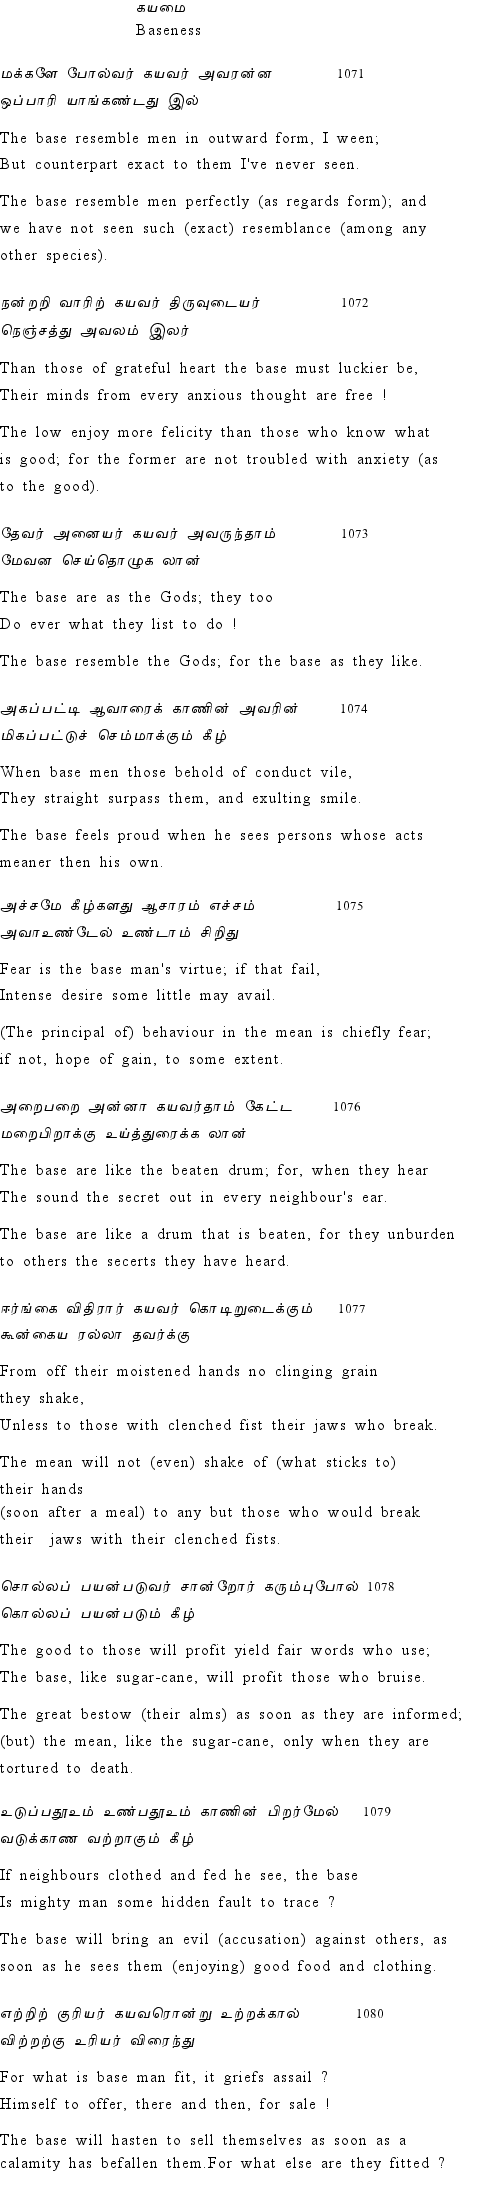 Text of Adhikaram 108